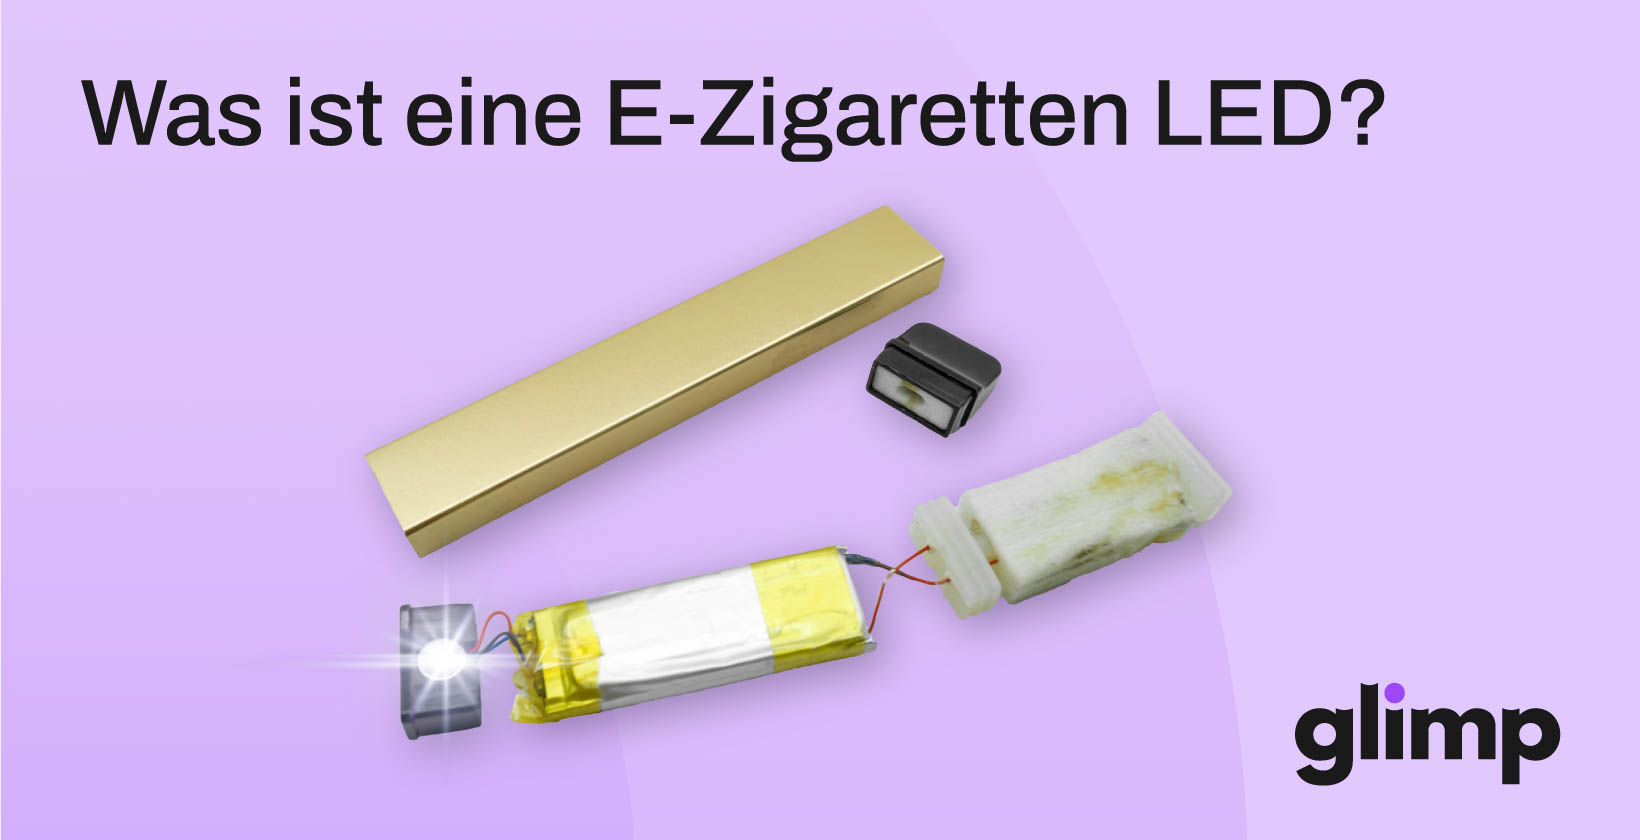 E-Zigaretten-LED-Licht (Warnleuchte): Was ist der Zweck?